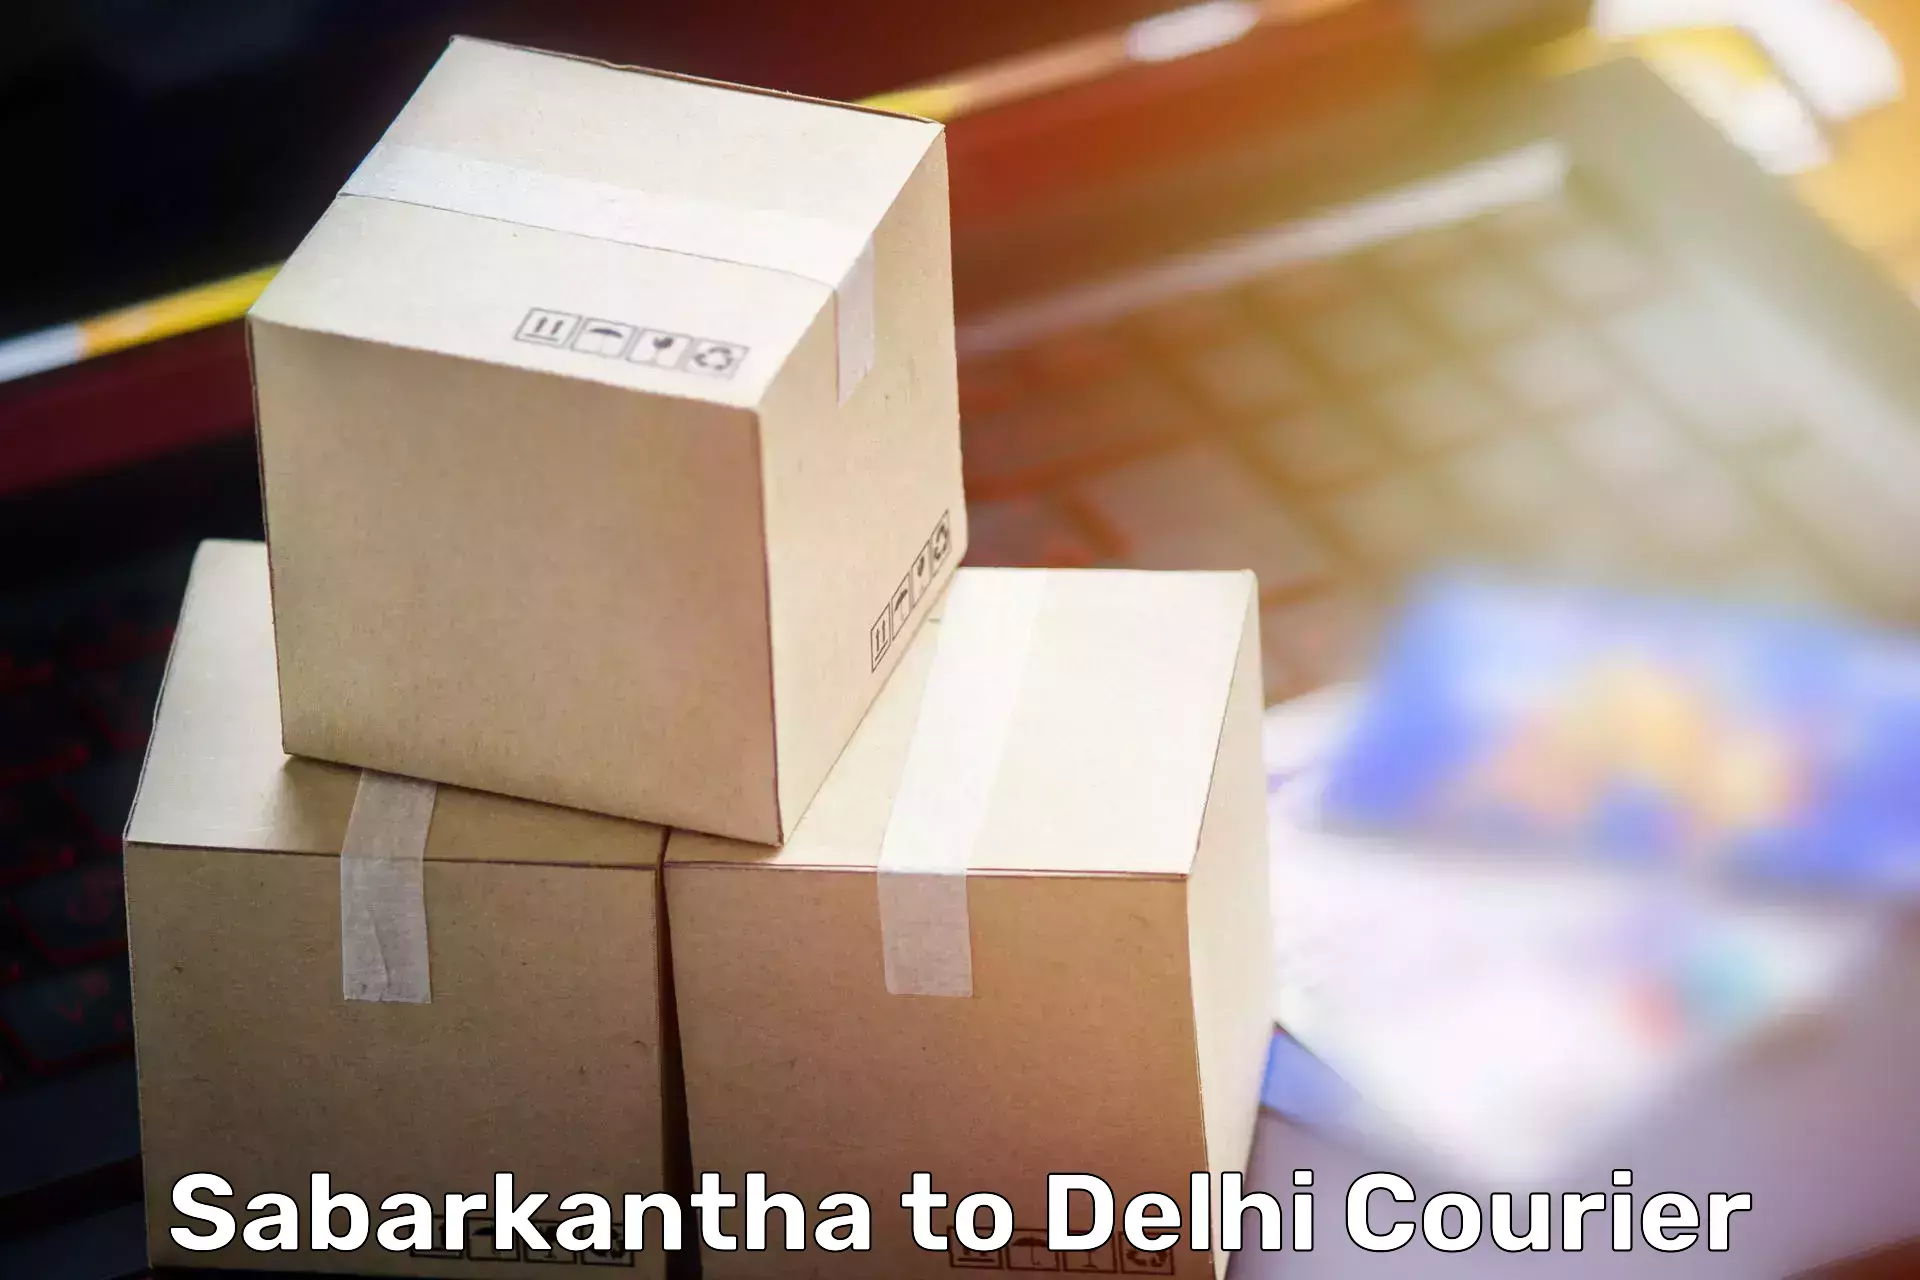 Moving and packing experts Sabarkantha to Burari